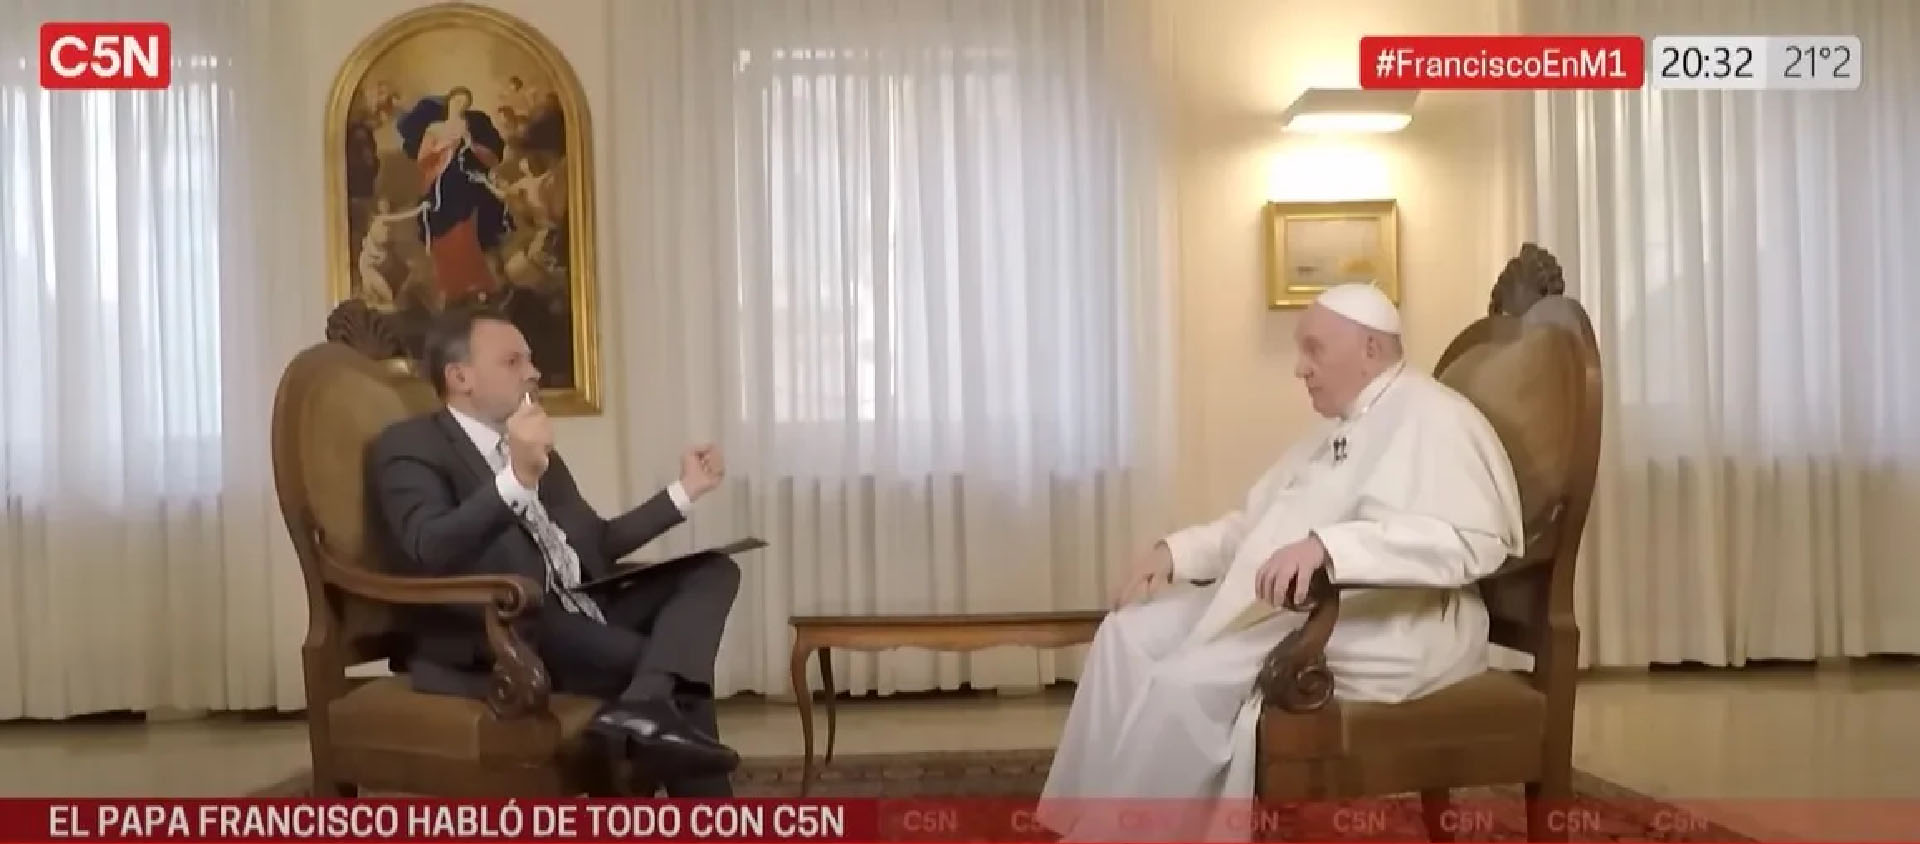 Durant l'entretien, le pape est revenu sur les circonstances de son élection en mars 2013 | Capture-écran